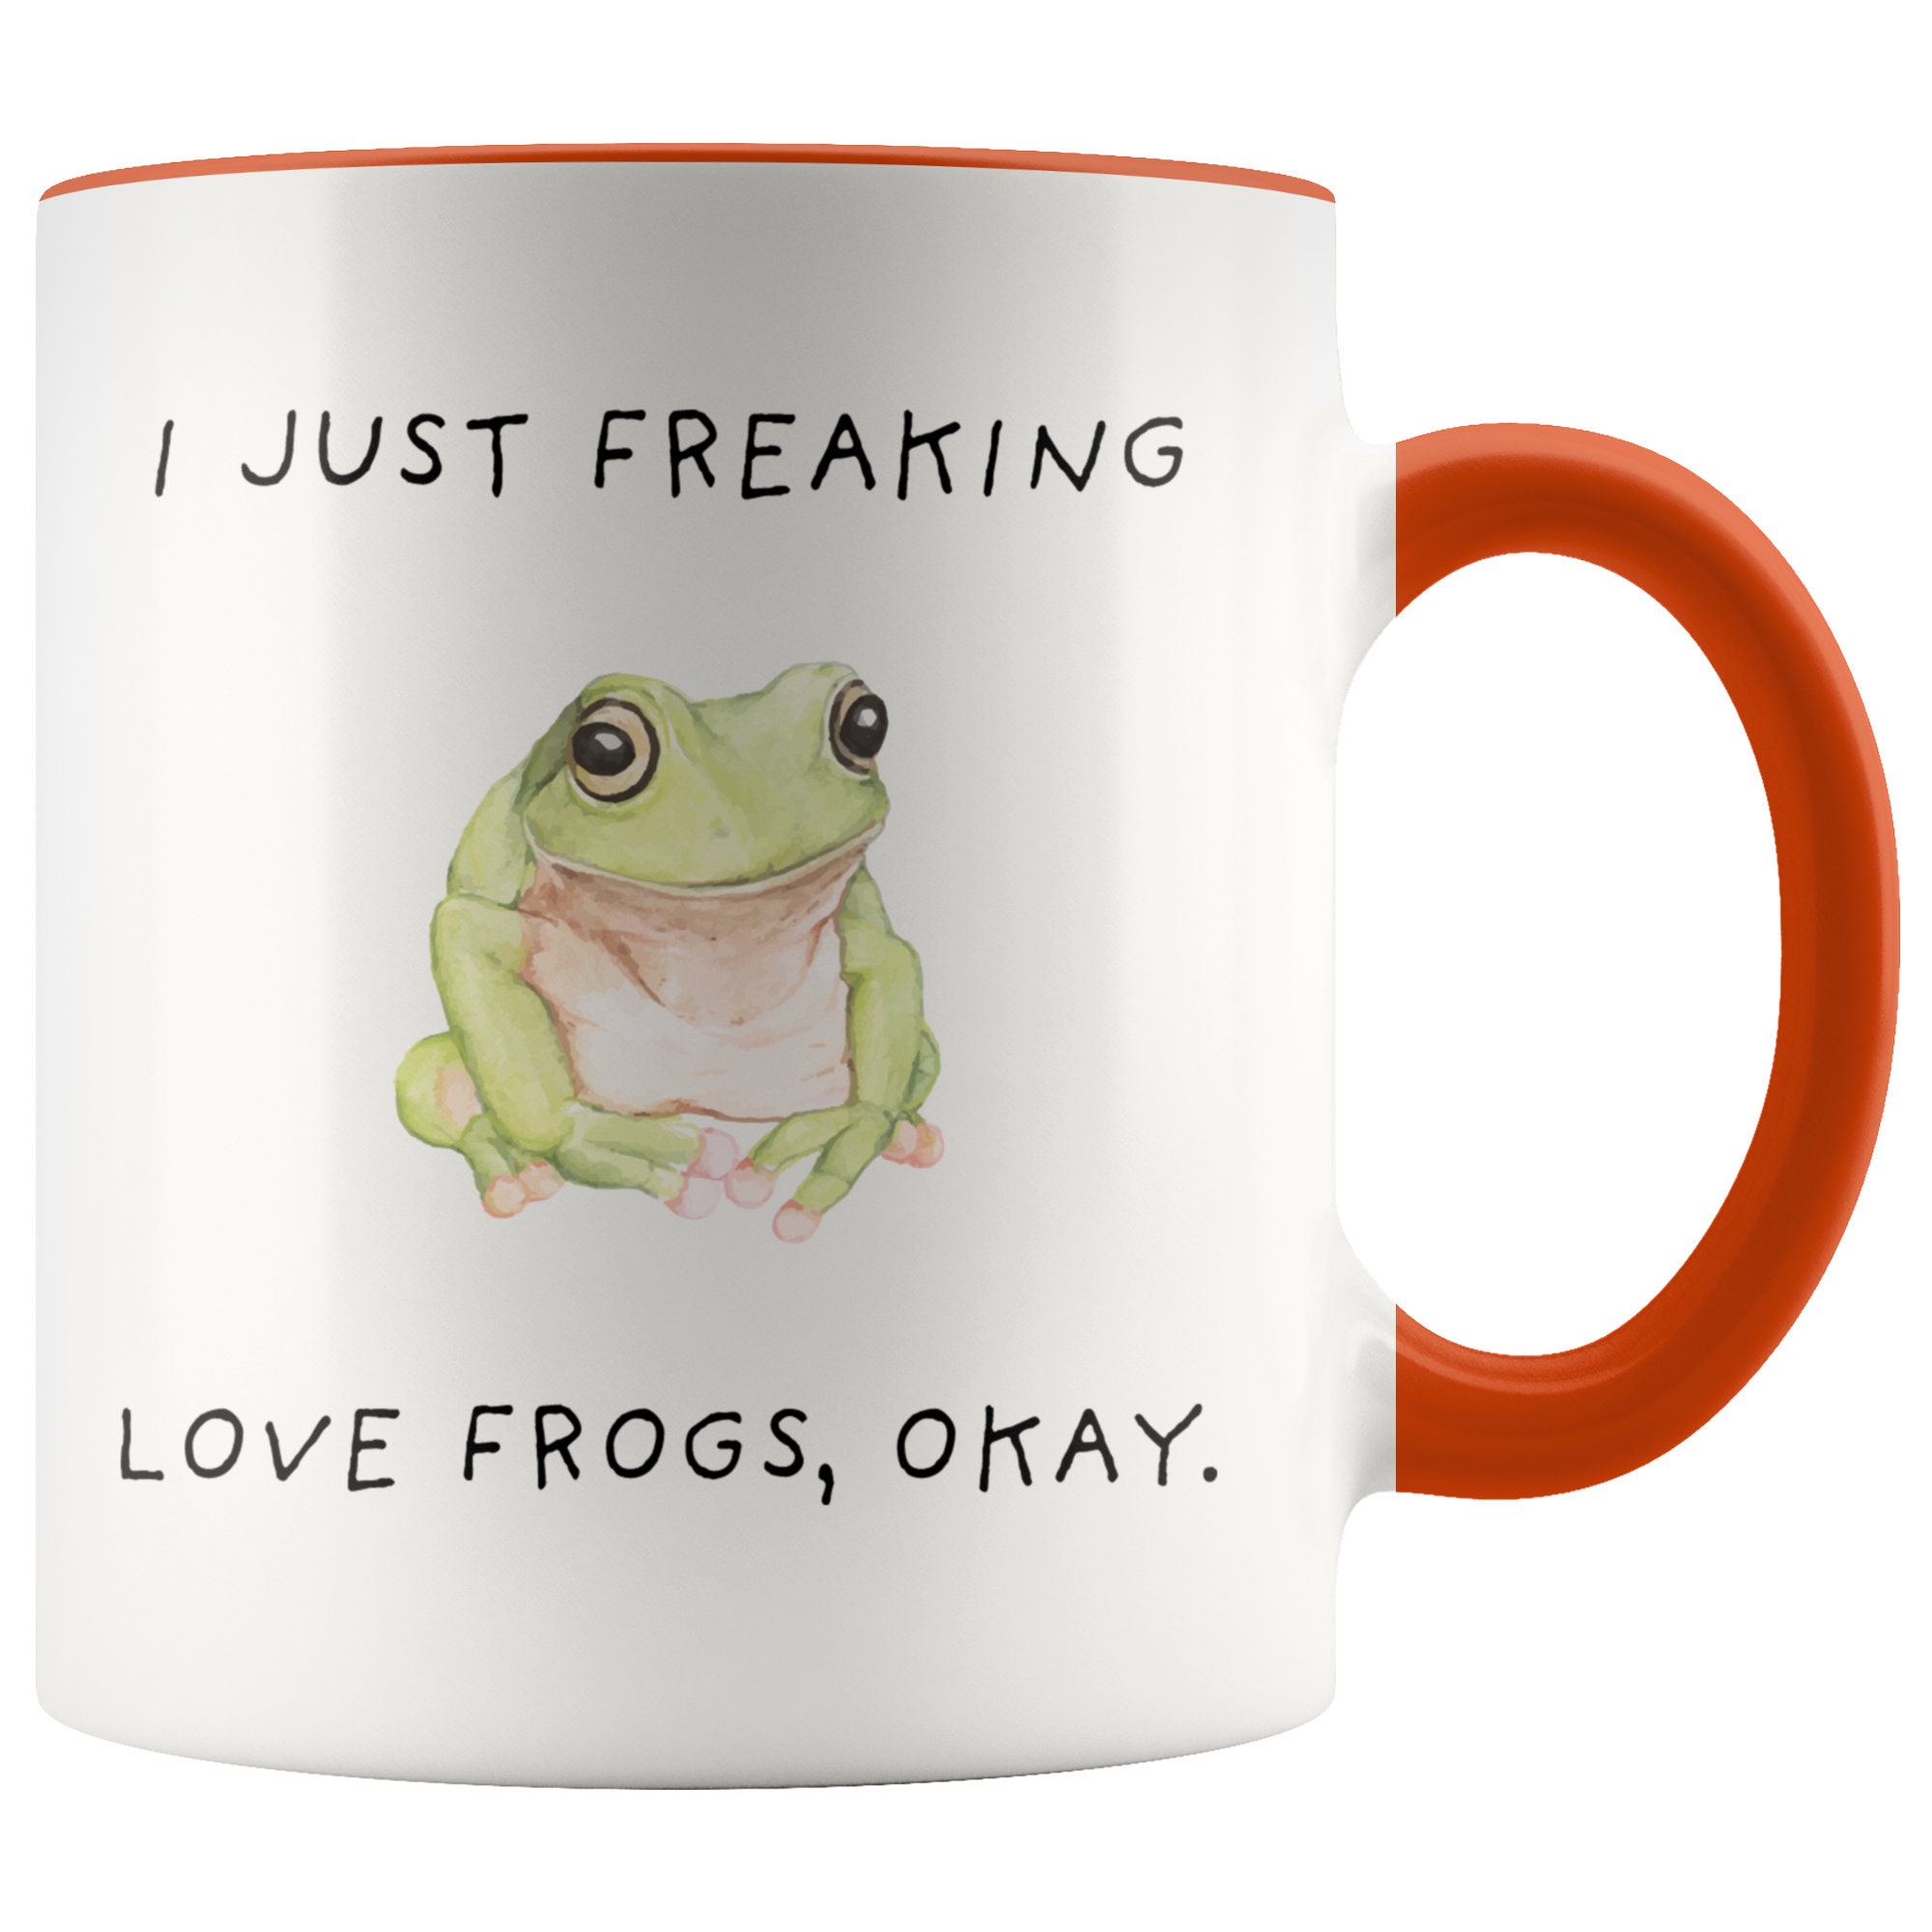 Polka dot frog mug. Husband said it was made for me. :)